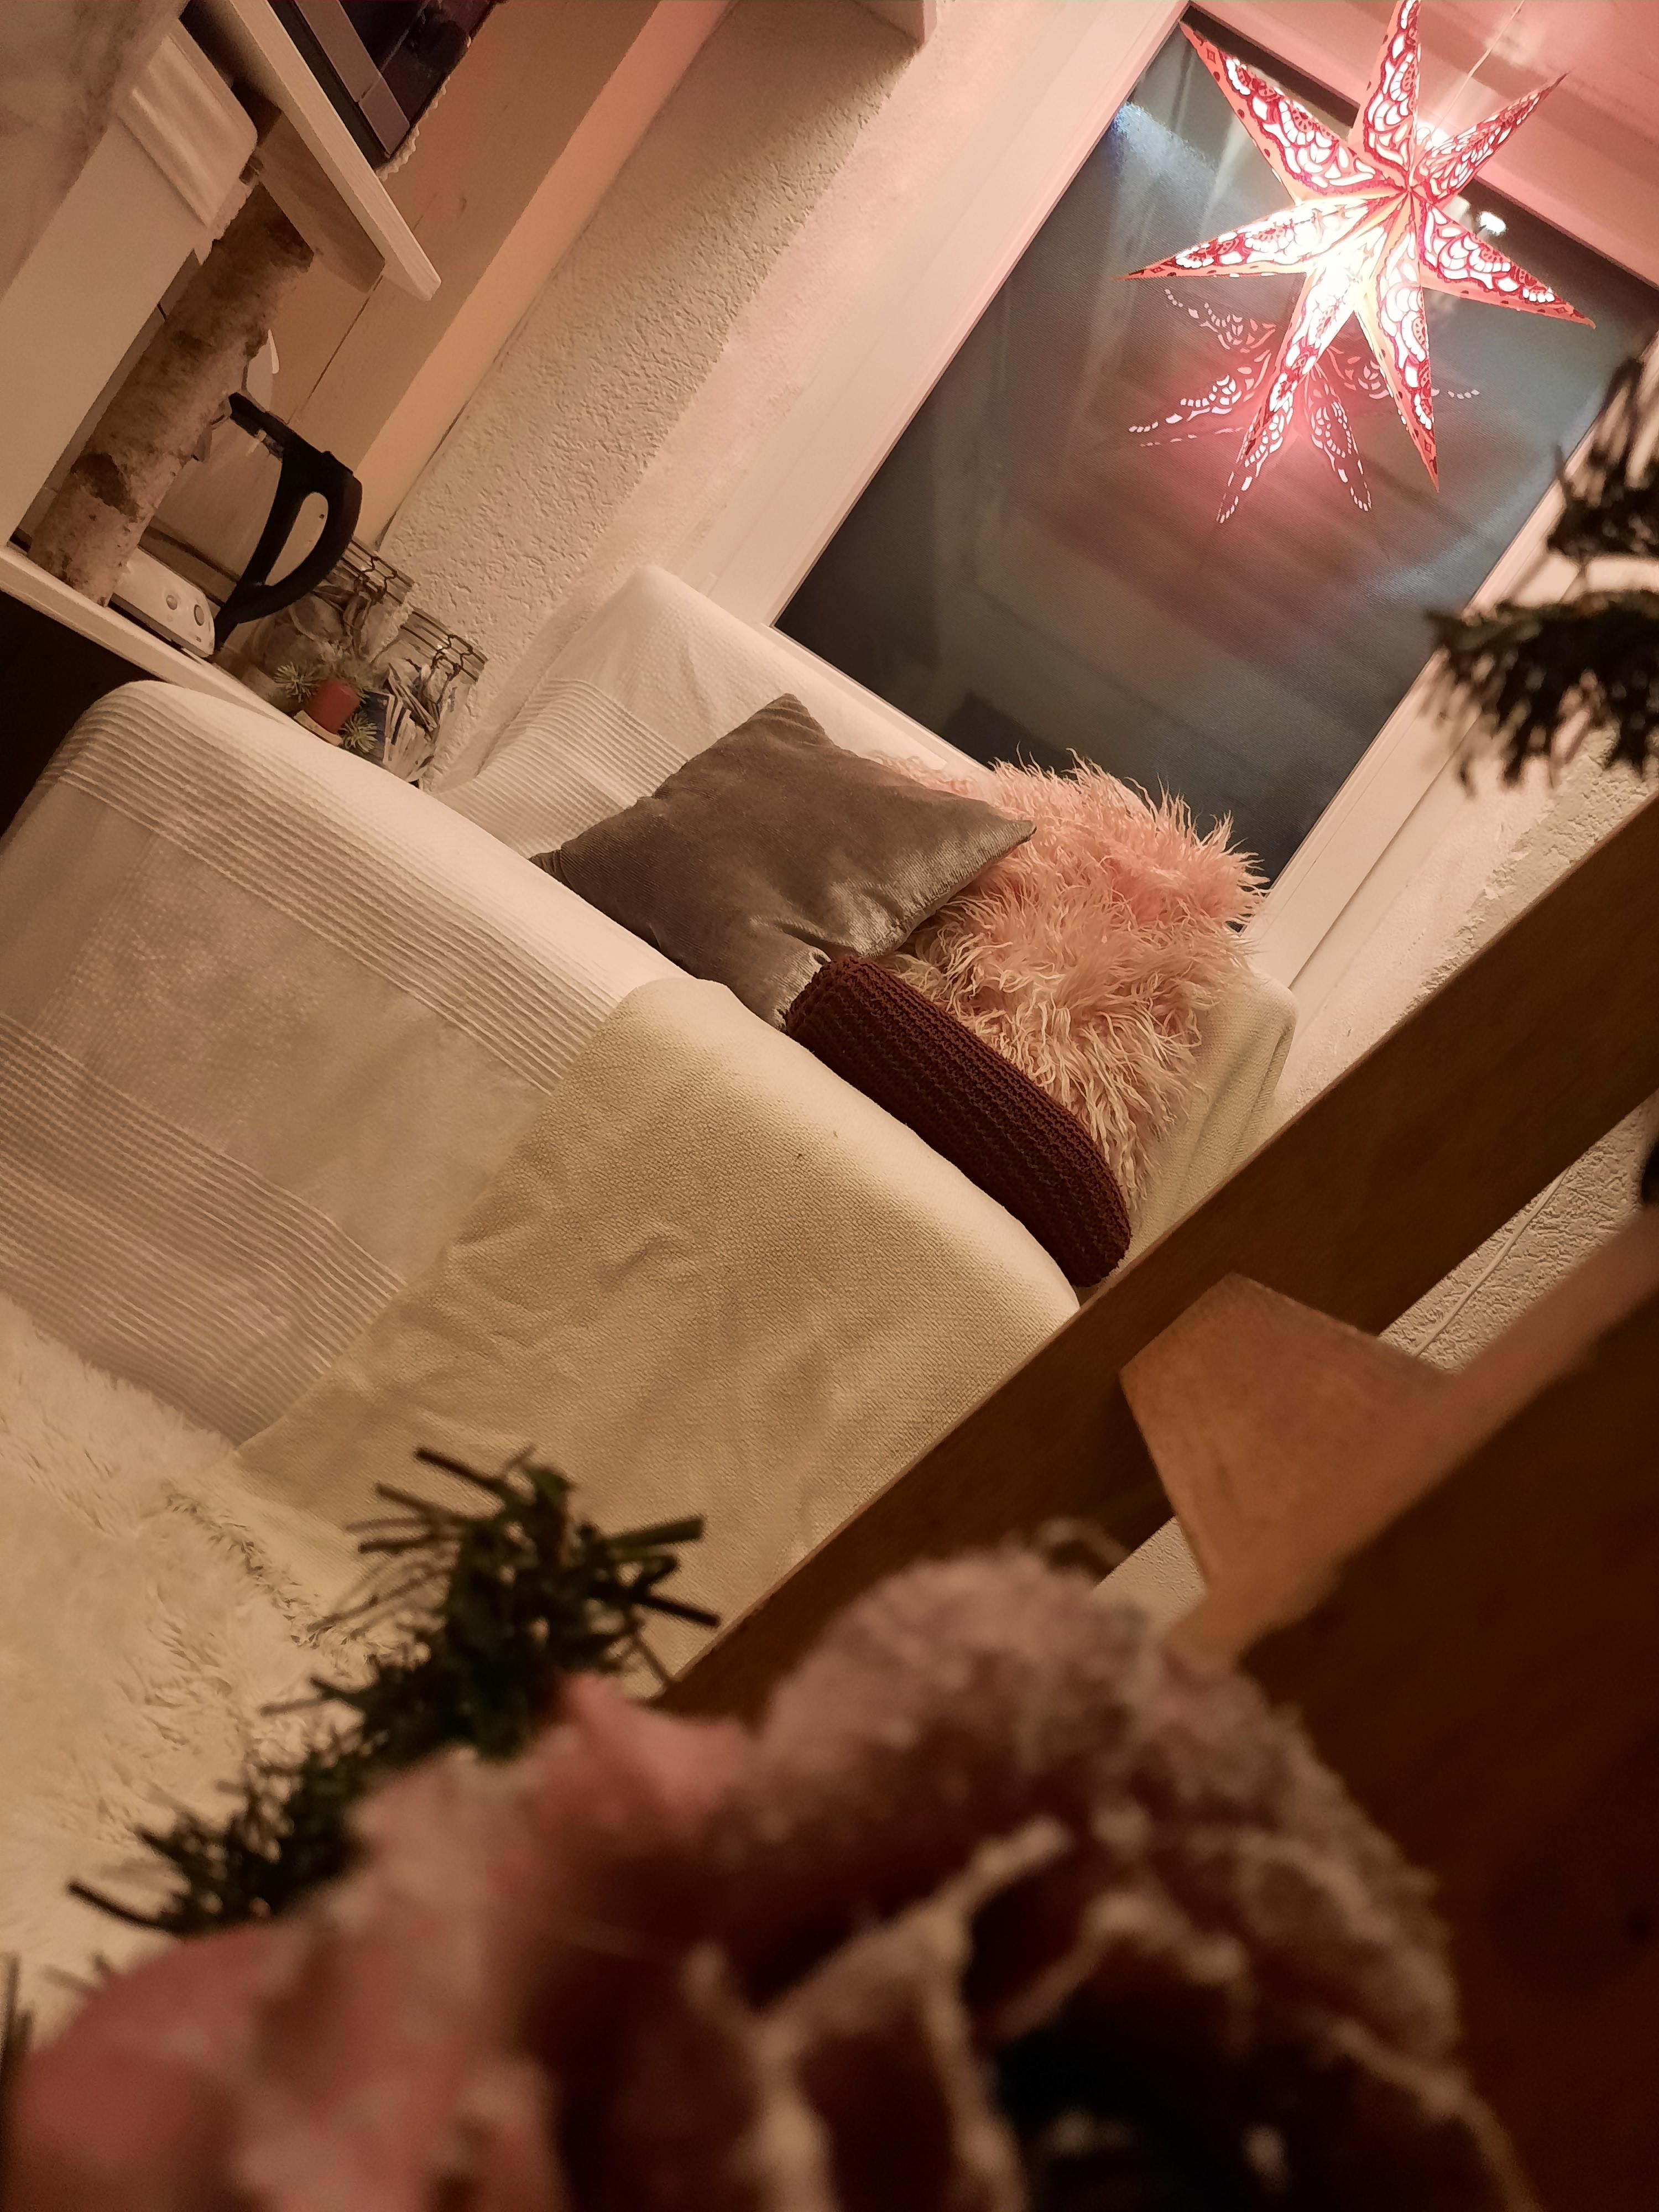 Meine kleine Werkstattwohnung...
#wohnung #werkstatt #weihnachten #weihnachtsdekoration #couch #selbstgebaut #kuschelecke #weiß #rosa #orange #kleinaberfein #couchstyle 